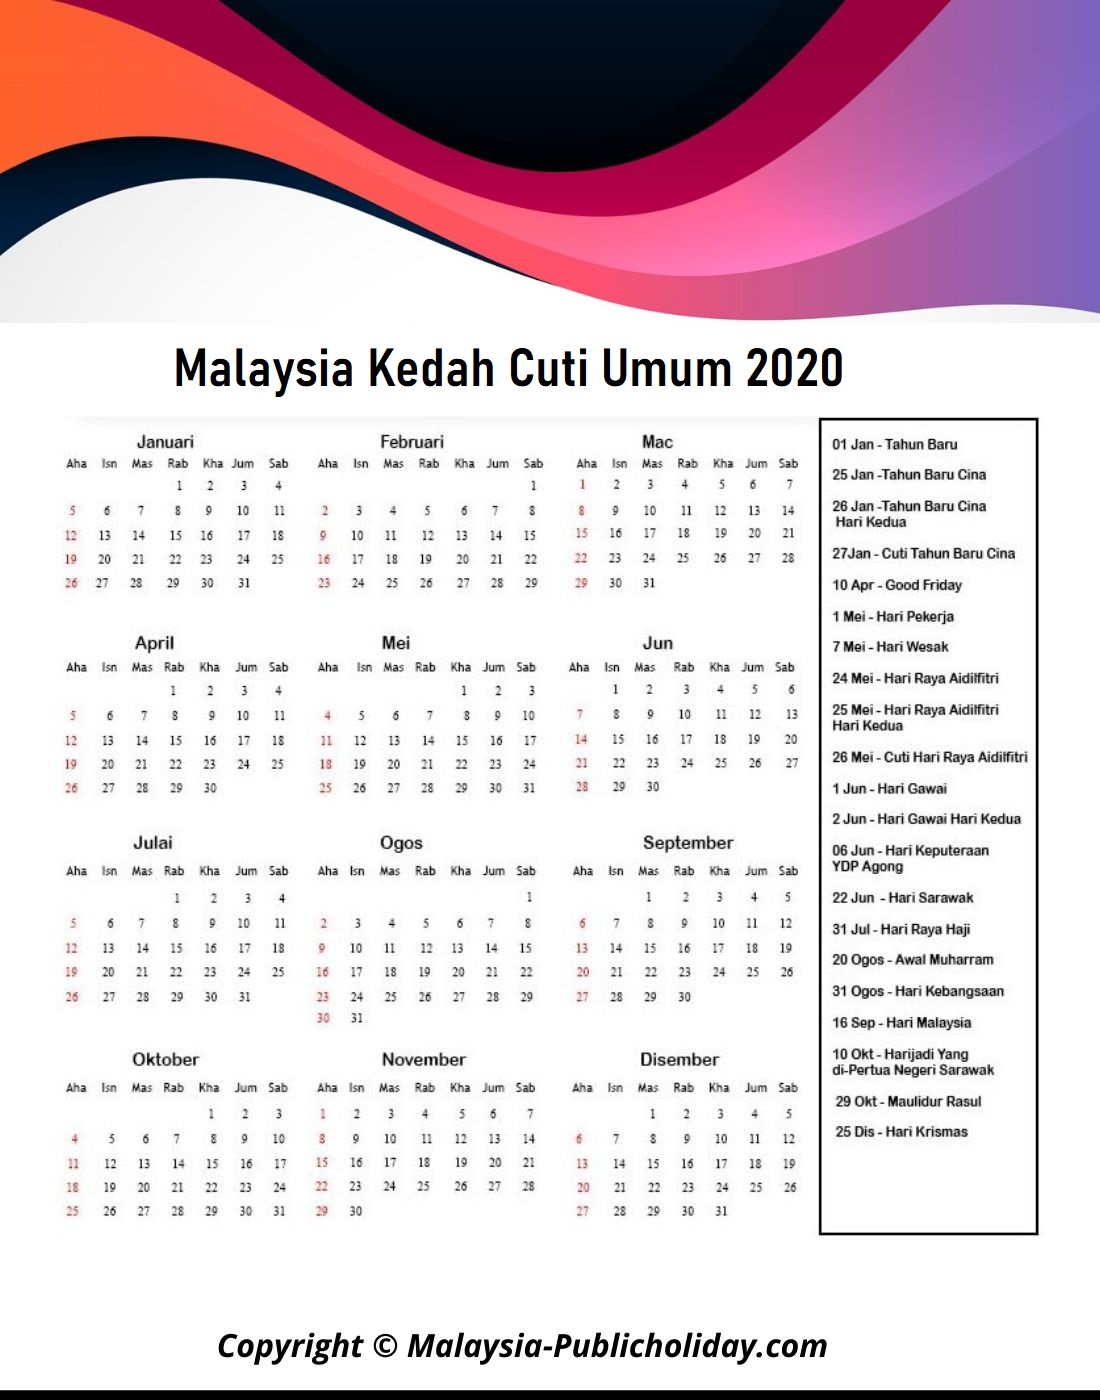 Cuti Umum Kedah 2020